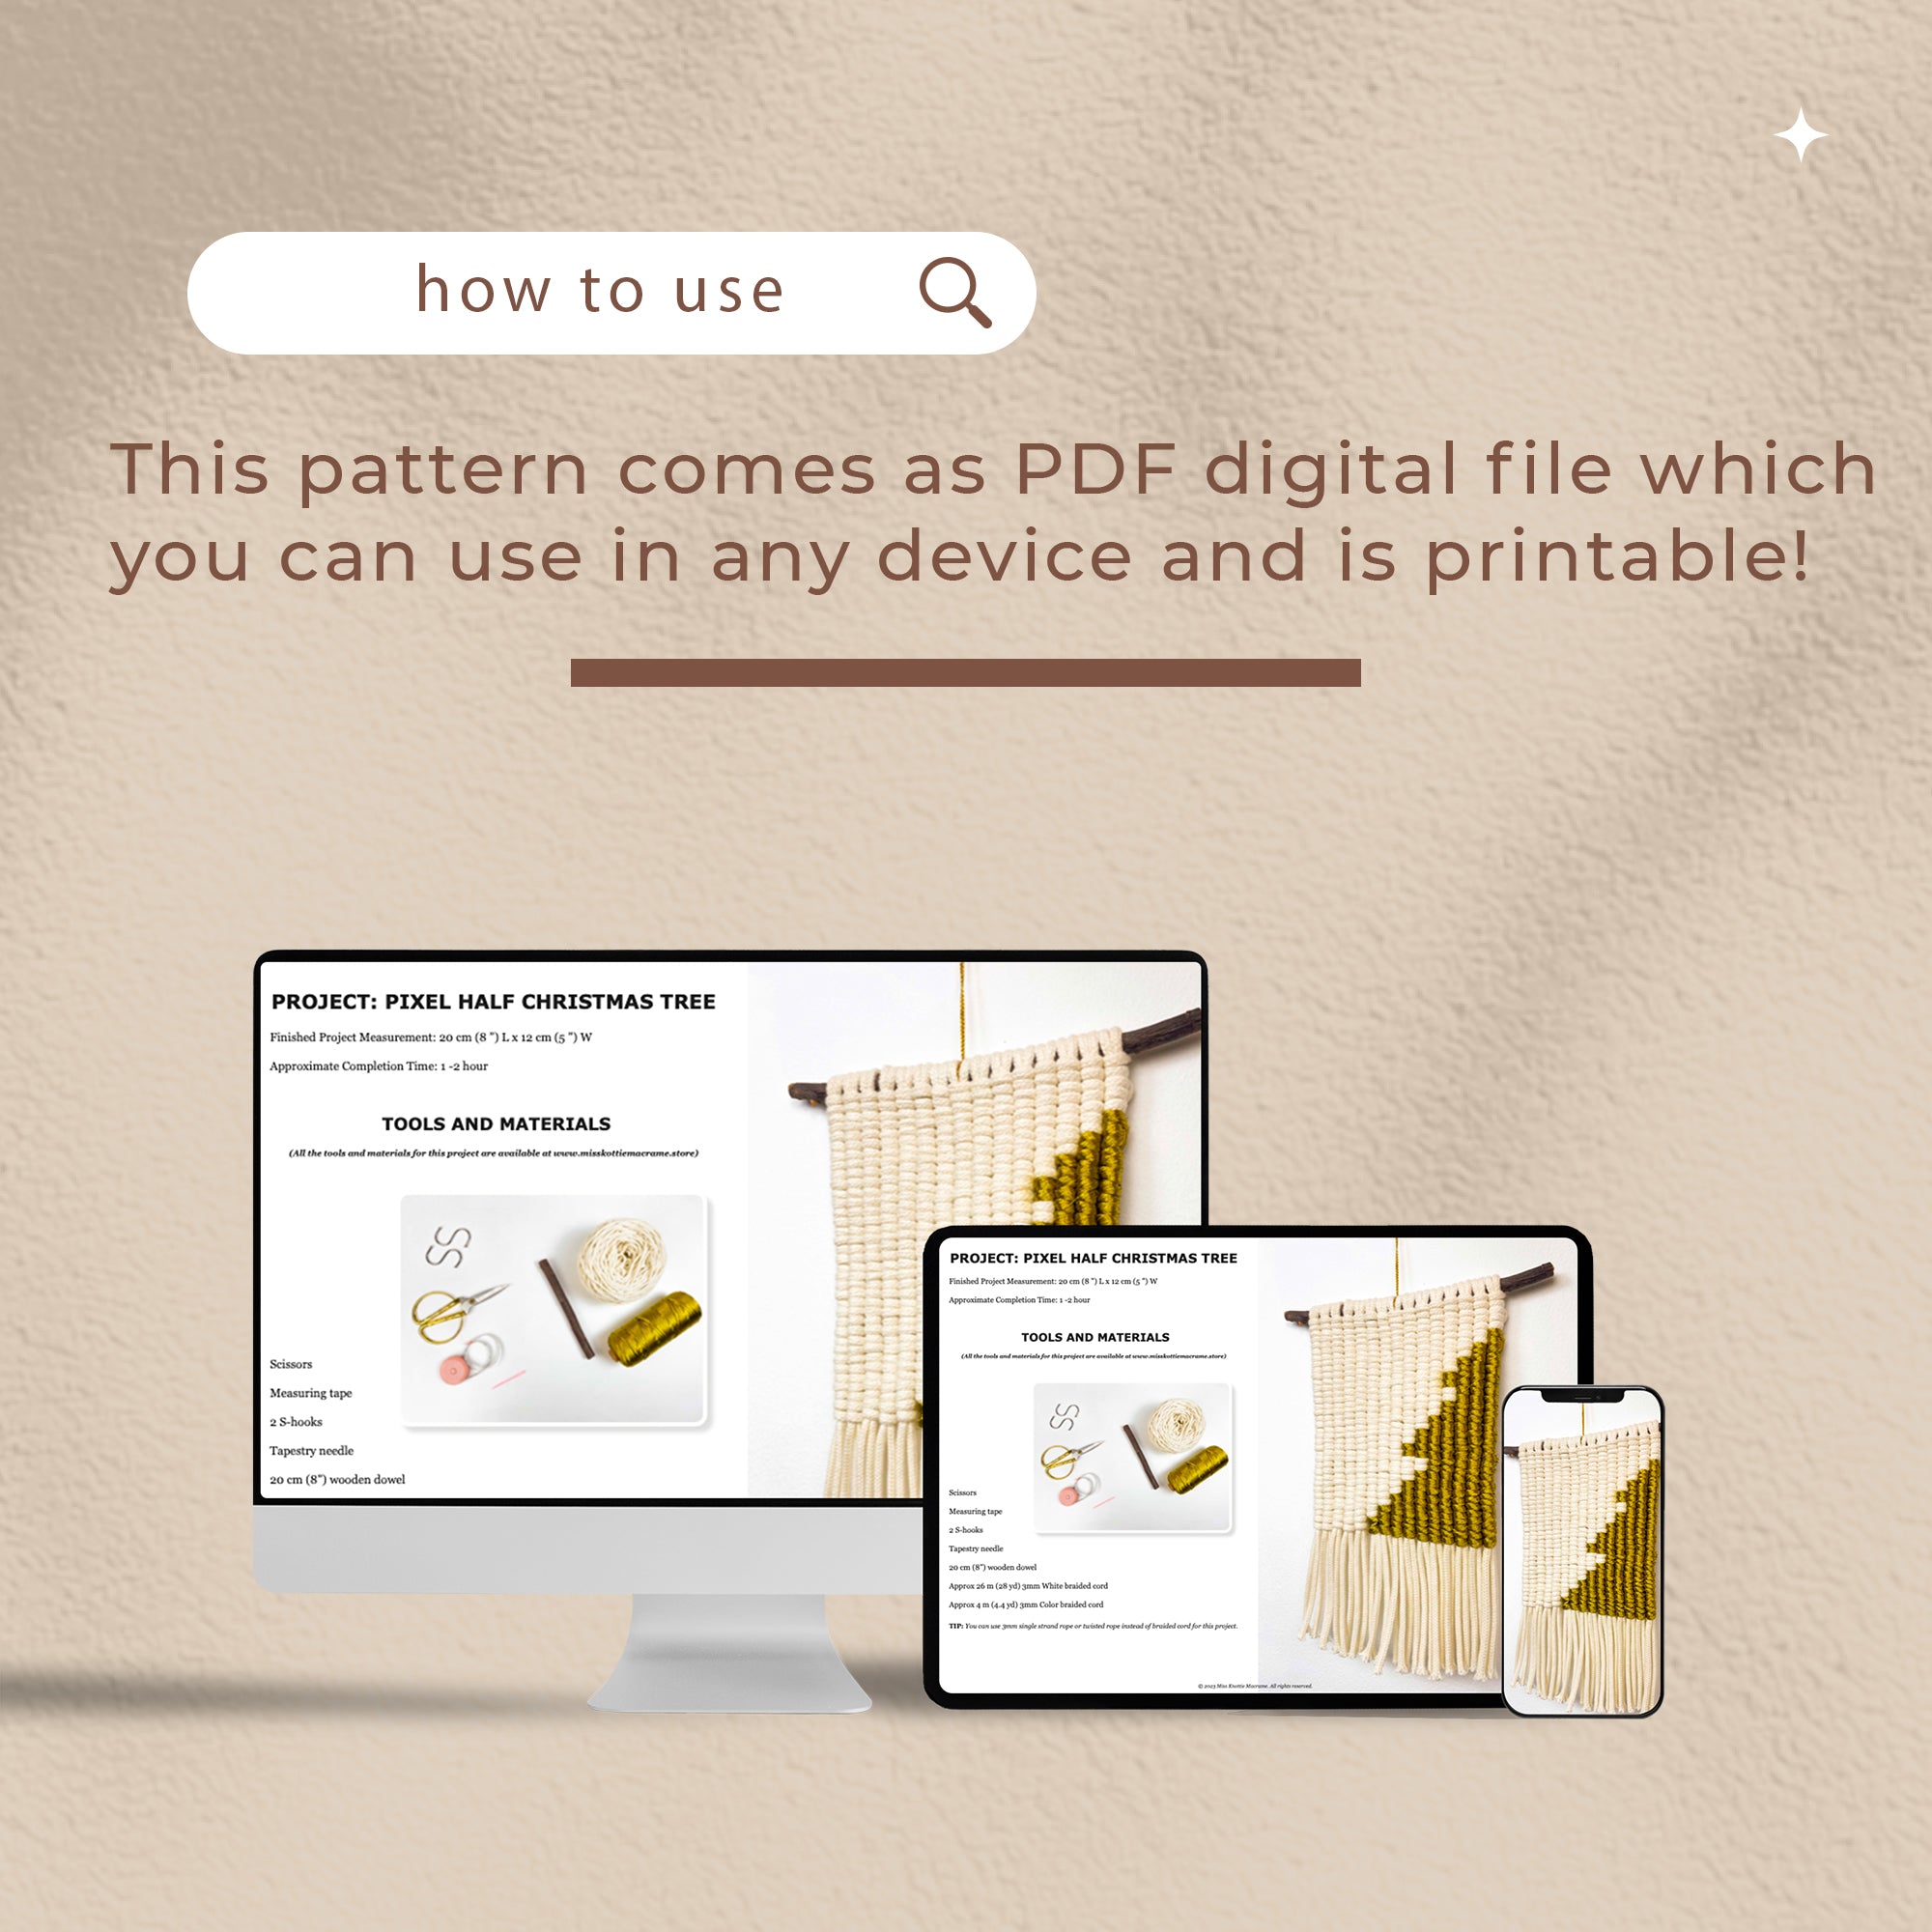 Padrão de pixels da árvore de meio Natal - PDF digital e guia de nós